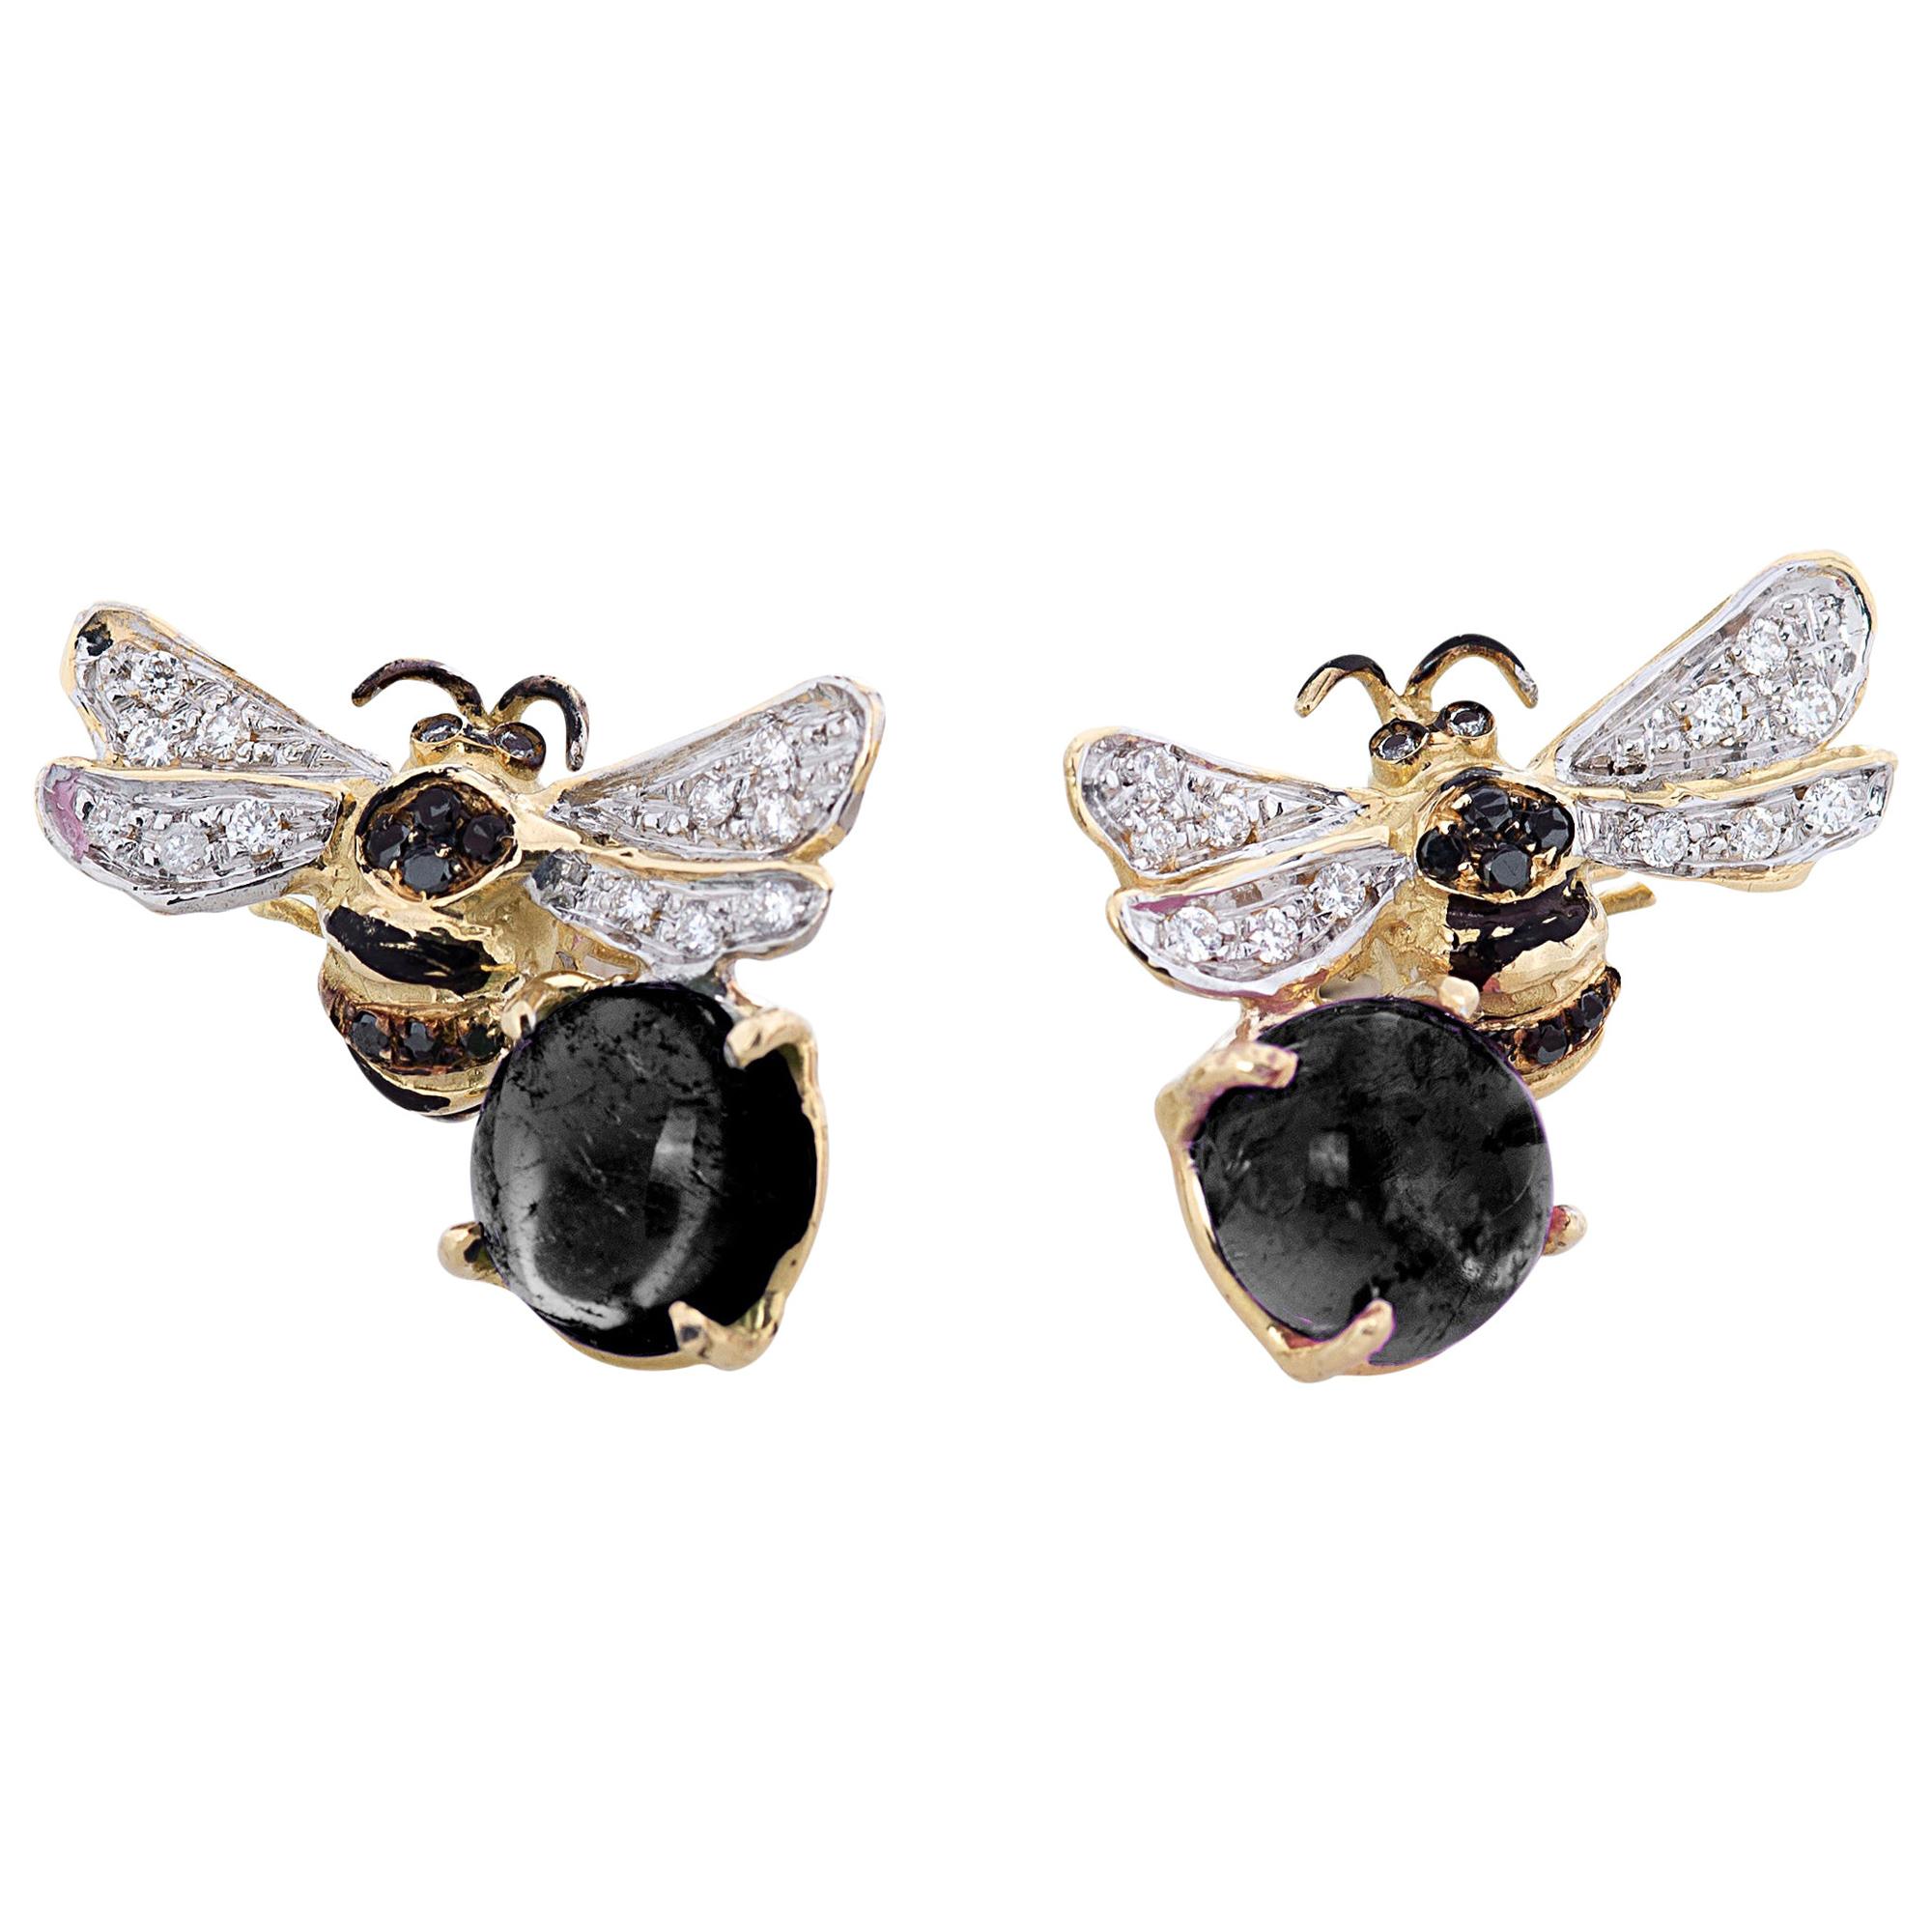 Clous d'oreilles en or 18 carats, onyx 0,16 carat, diamants blancs et noirs 0,18 carat, en forme d'abeilles